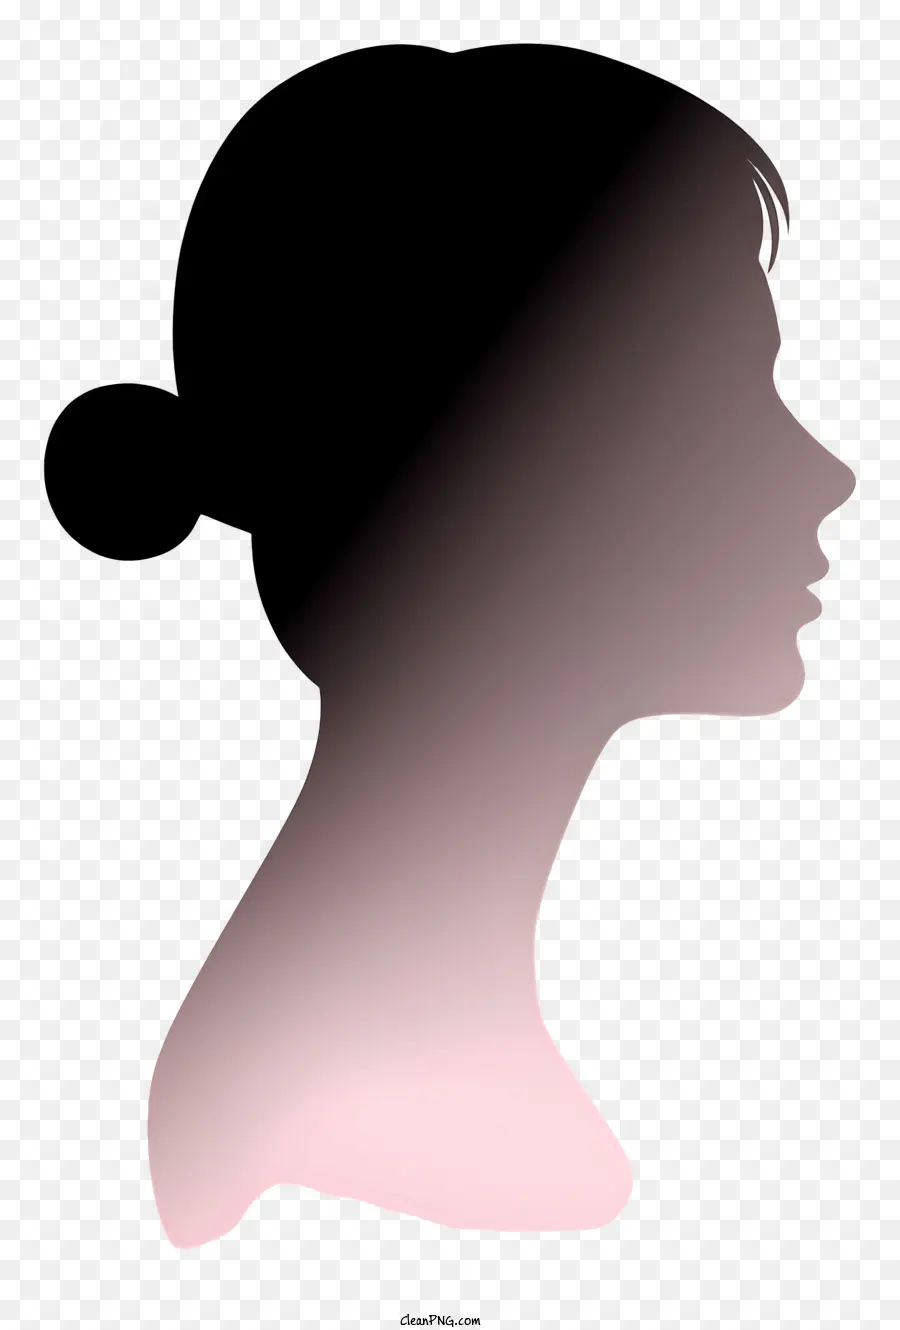 phụ nữ thực tế mặt đối mặt với hình bóng của phụ nữ Hồ sơ hình bóng màu hồng - Hồ sơ hình bóng của một người phụ nữ có đôi mắt nhắm